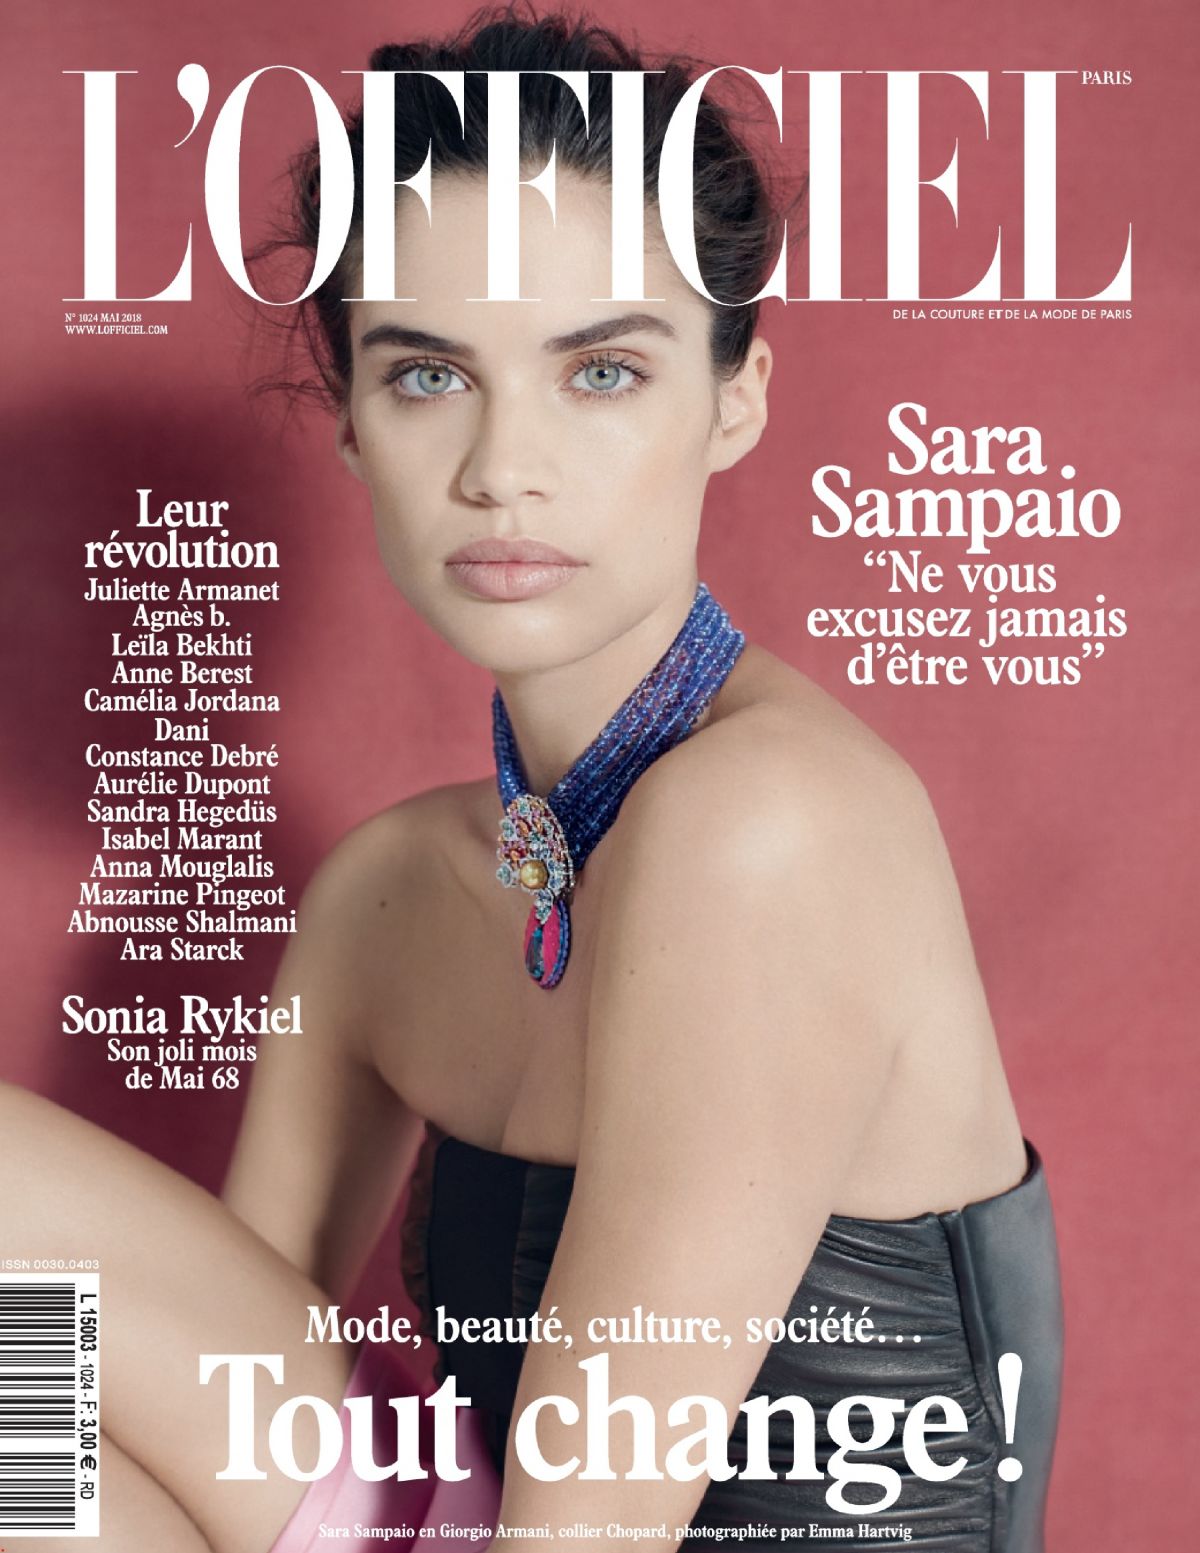 Sara Sampaio for L’Officiel, May 2018